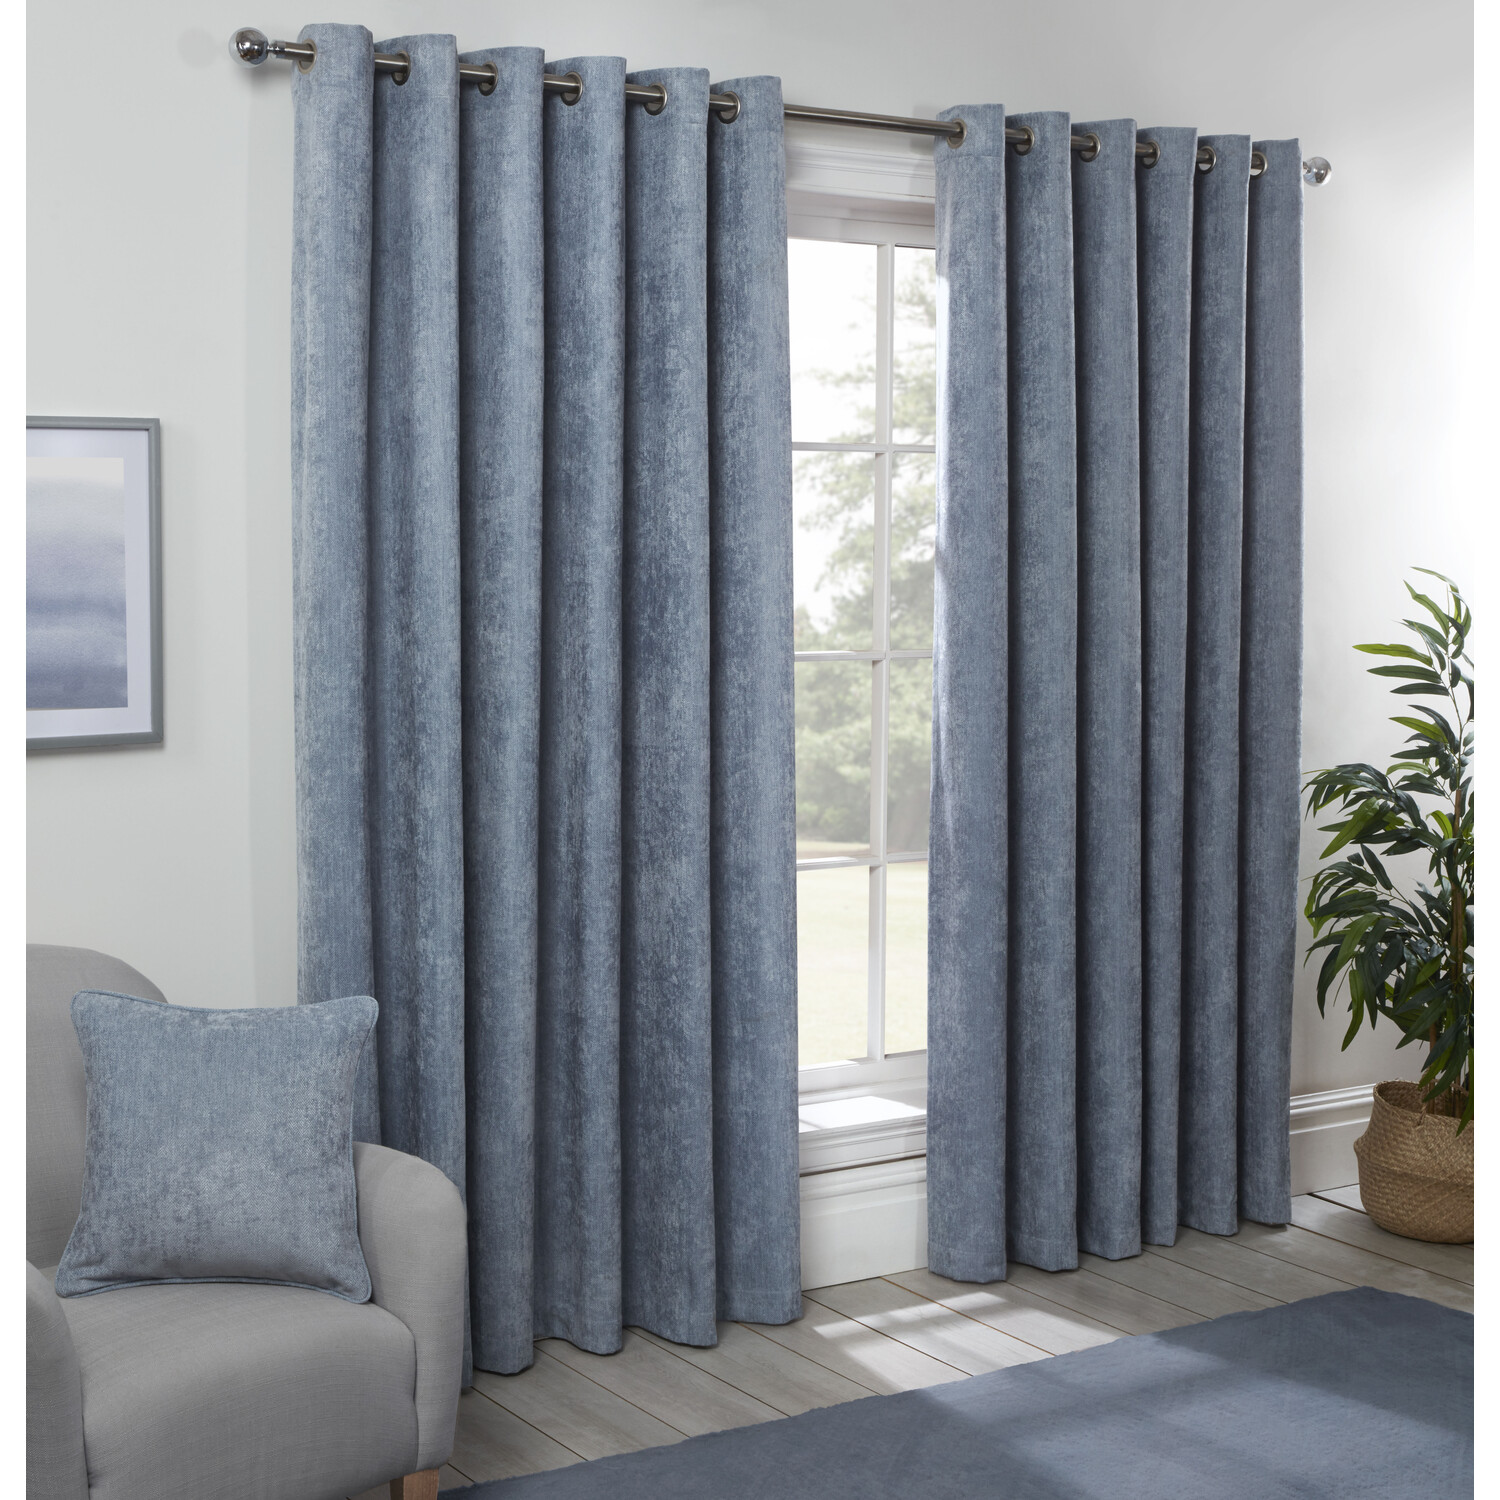 Divante Alden Powder Blue Thermal Curtains 168 x 229cm Image 1